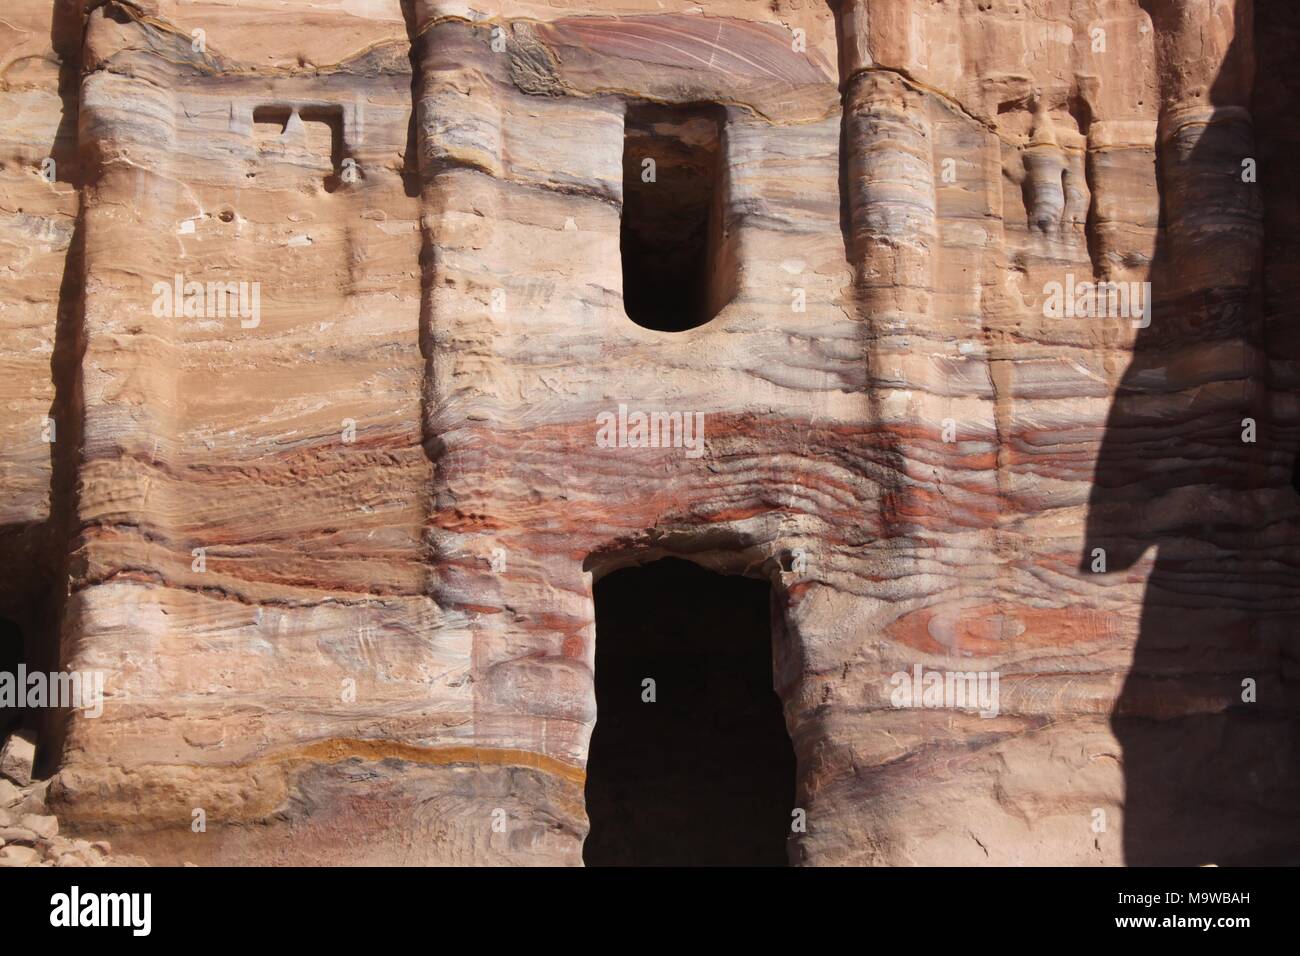 El Deir (Ad Deir) del Monasterio de Petra. La estructura monumental está excavada en la roca de la montaña y mide alrededor de 45 metros de alto. Foto de stock